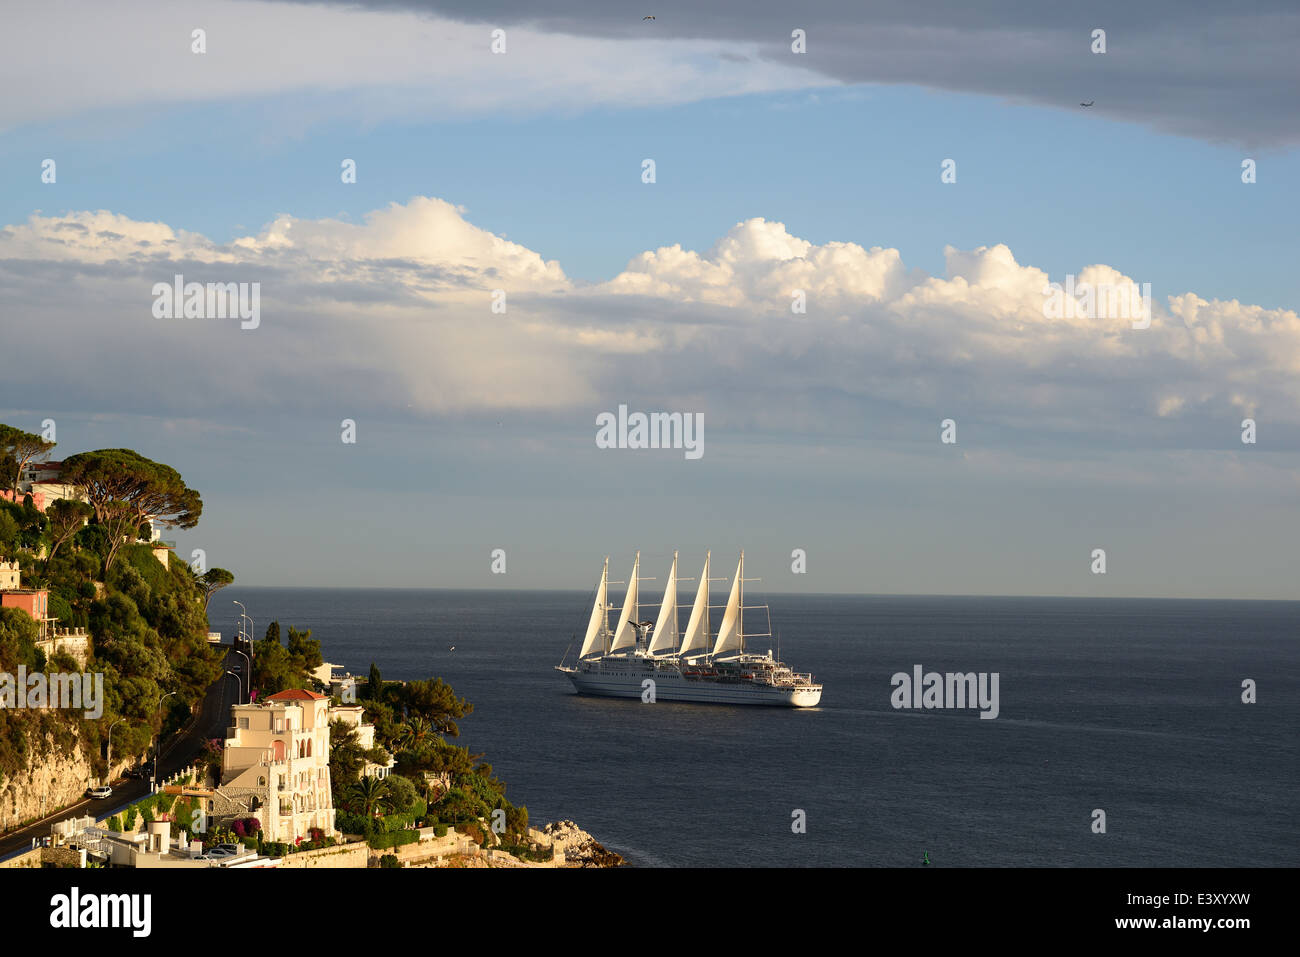 Club Med 2, le plus long voilier du monde (à partir de 2014) avec 194 mètres. Au large de Nice, Alpes-Maritimes, Côte d'Azur, France. Banque D'Images